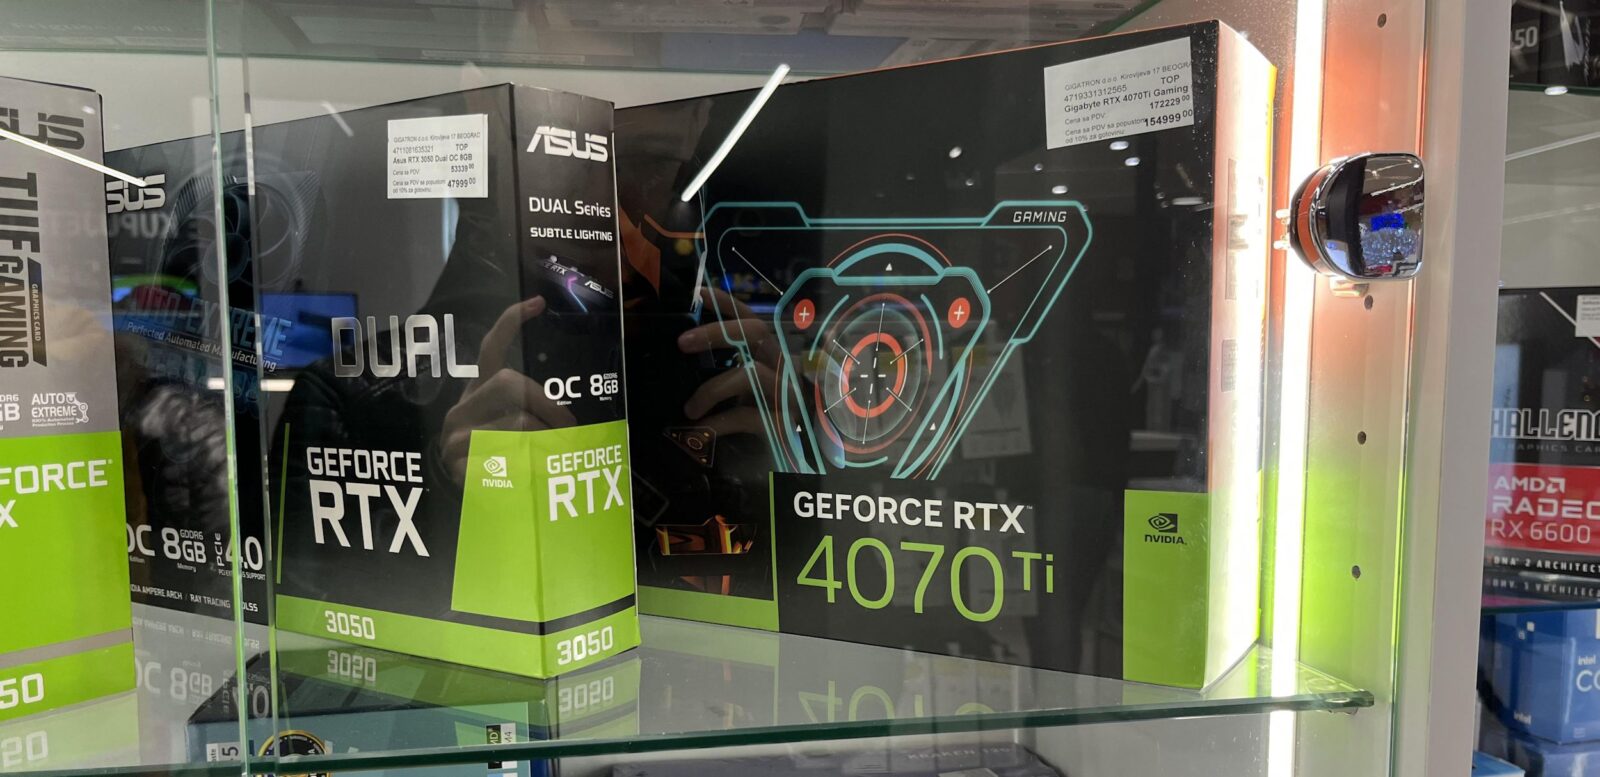 NVIDIA GeForce RTX 4070 Ti 1 1 | GeForce RTX 4070 Ti | หลุด GeForce RTX 4070 Ti วางขายอยู่ที่ประเทศเซอร์เบีย ในราคา 48,000 บาท